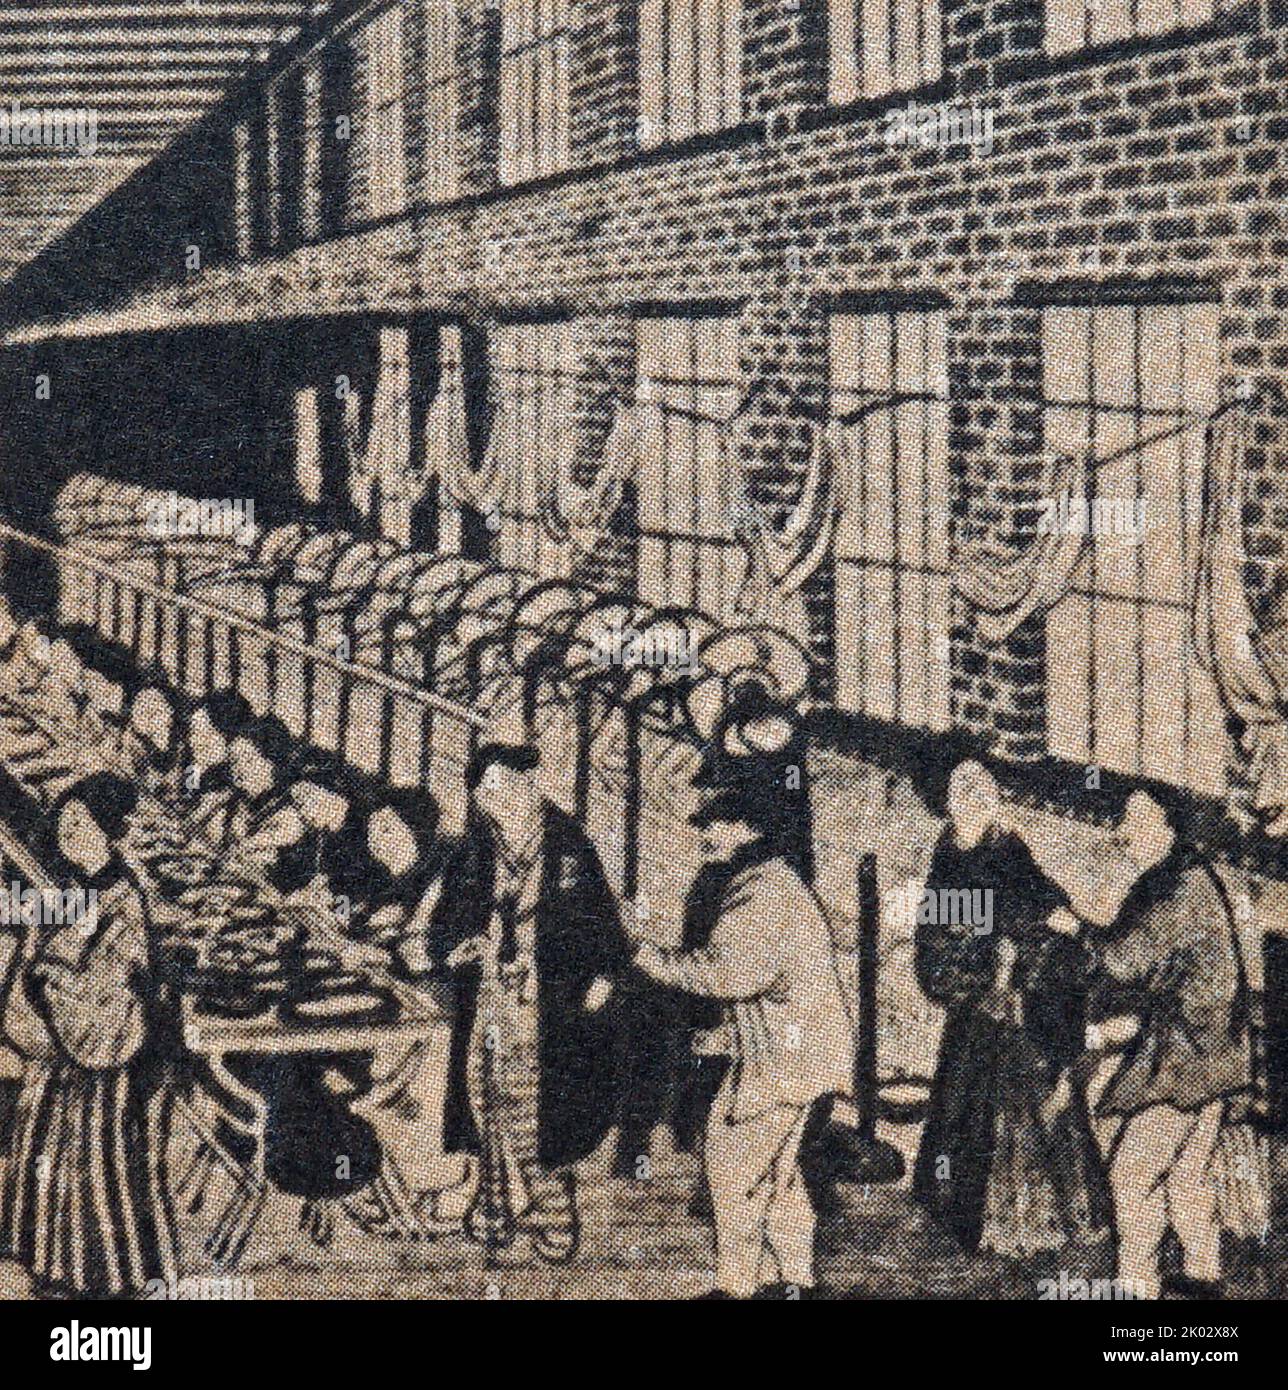 Eine Textilfabrik in Japan. 19. Jahrhundert. Stockfoto